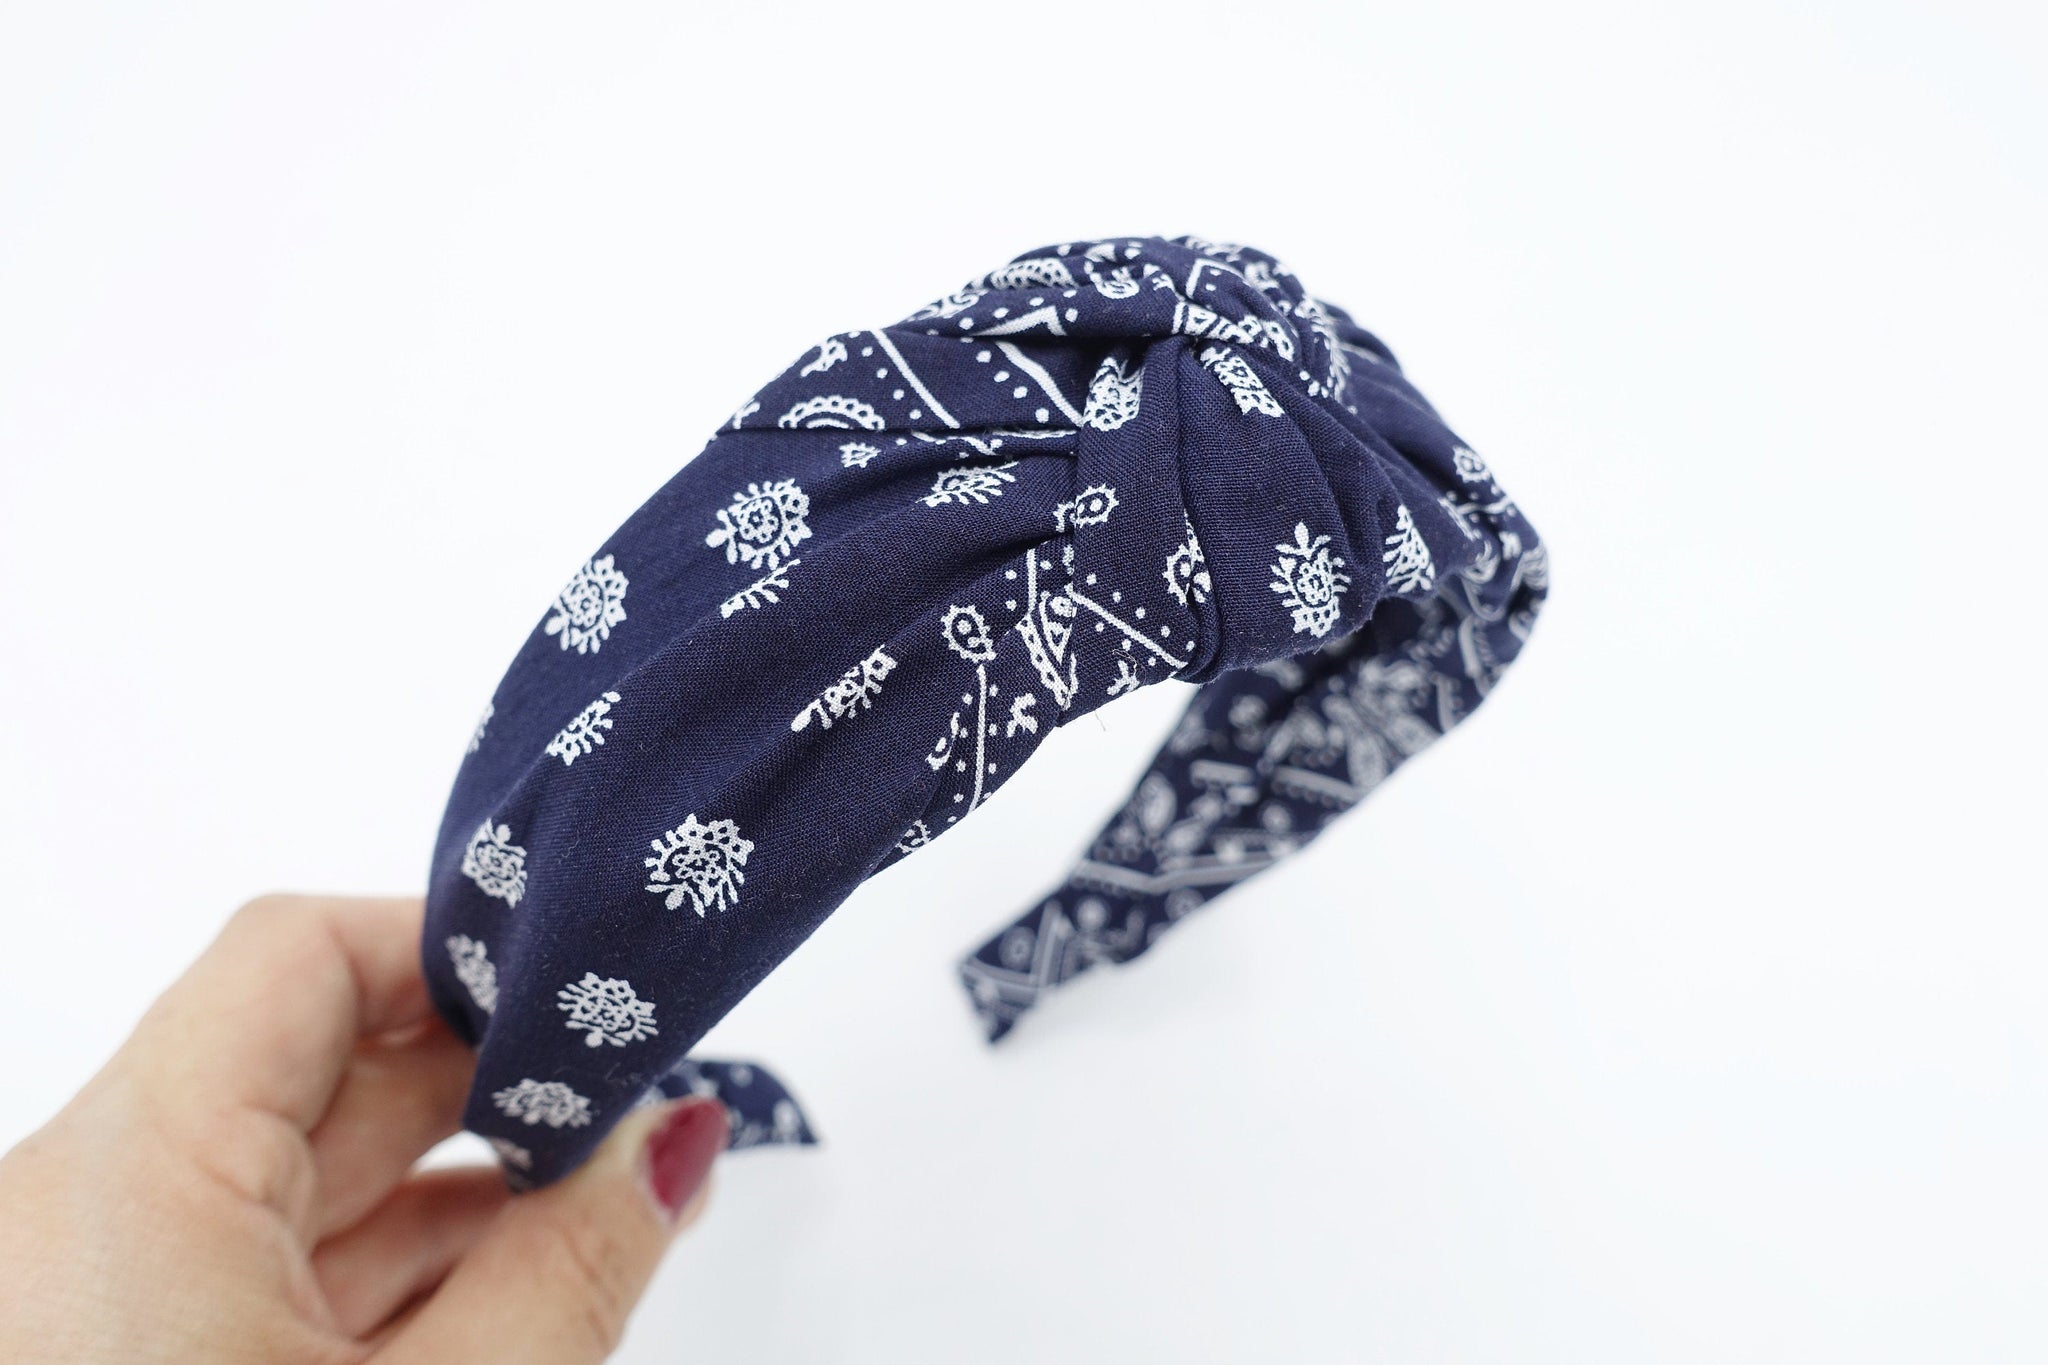 veryshine.com Headband paisley print bandana headband knotted casual hairband for woman